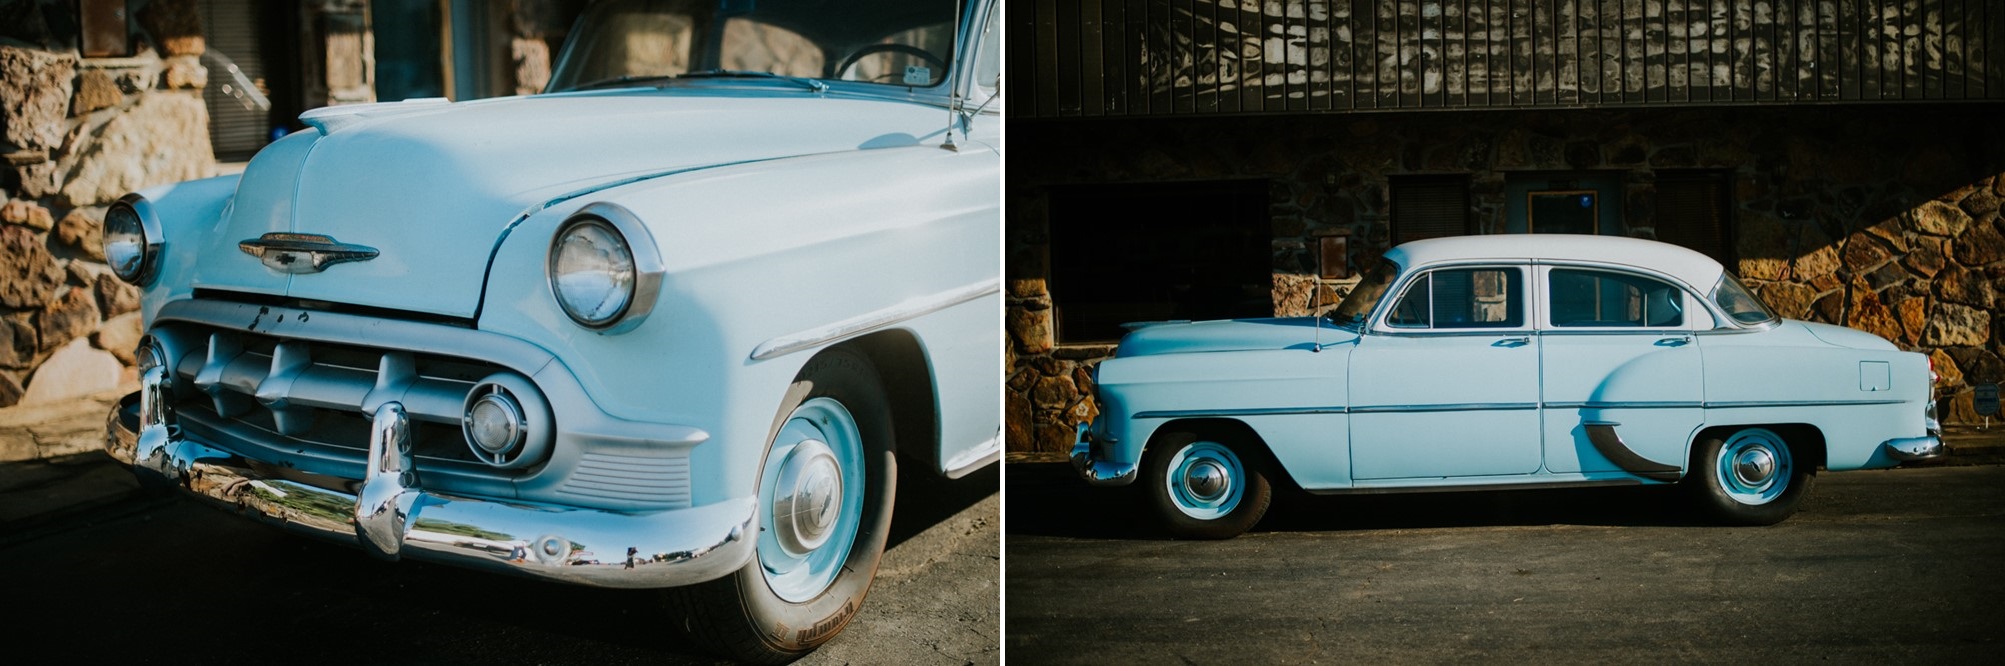 Stylish Mid-Century Vintage Wedding Car // Photography ~ Myranda Randle Photography